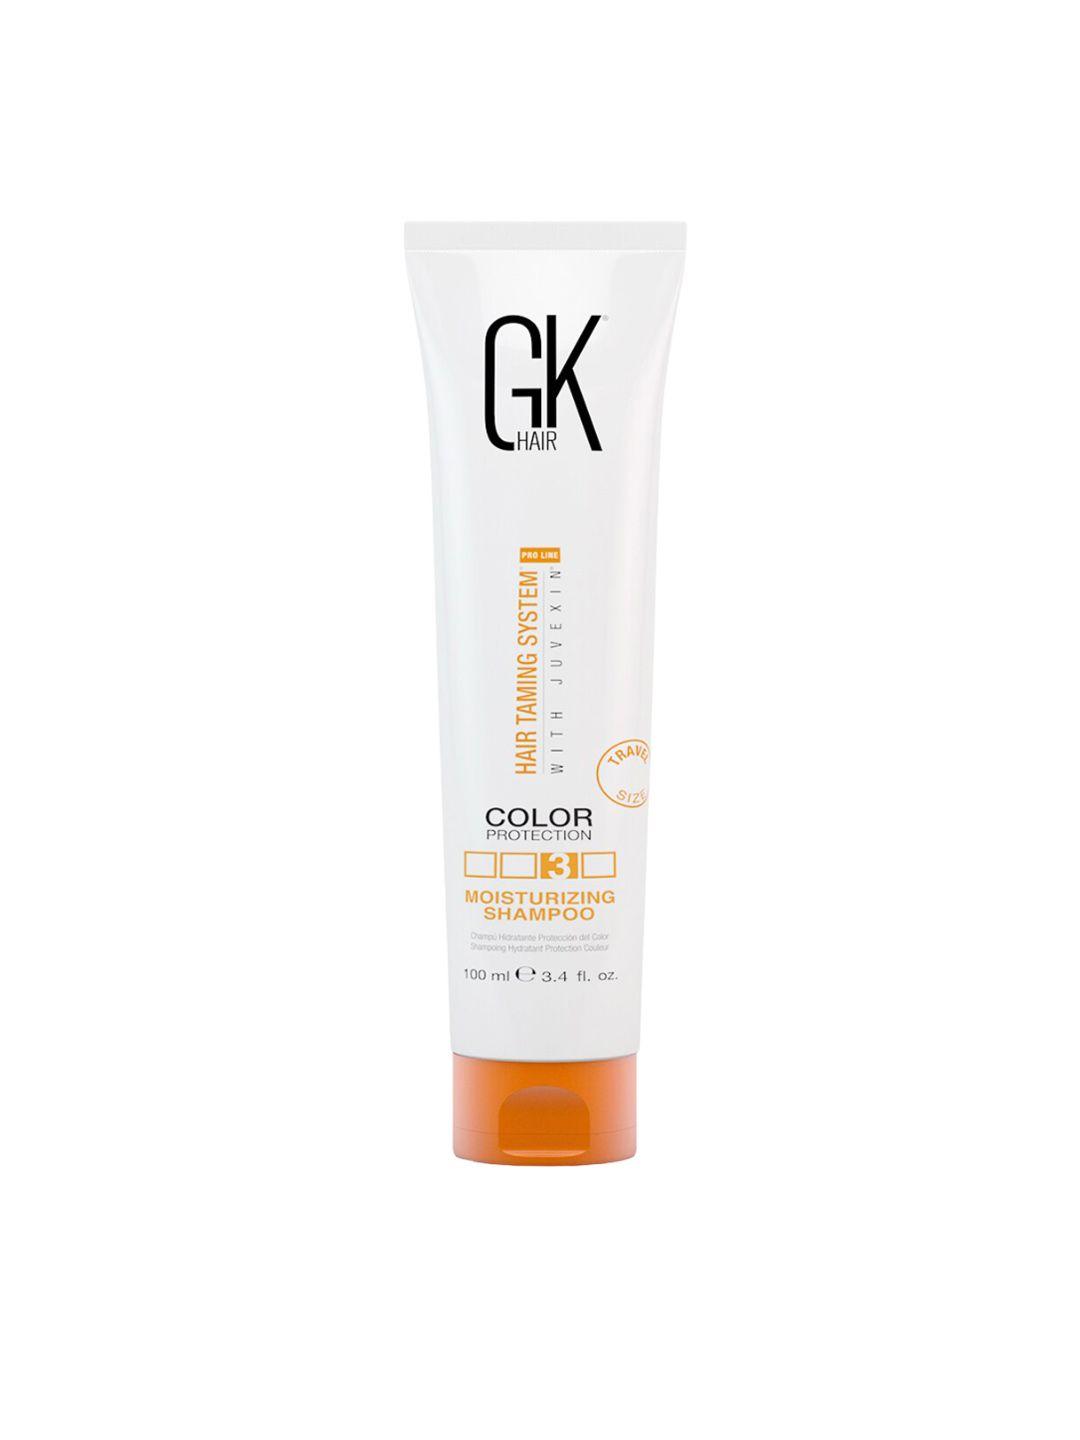 gk hair moisturizing shampoo for color protection 100ml